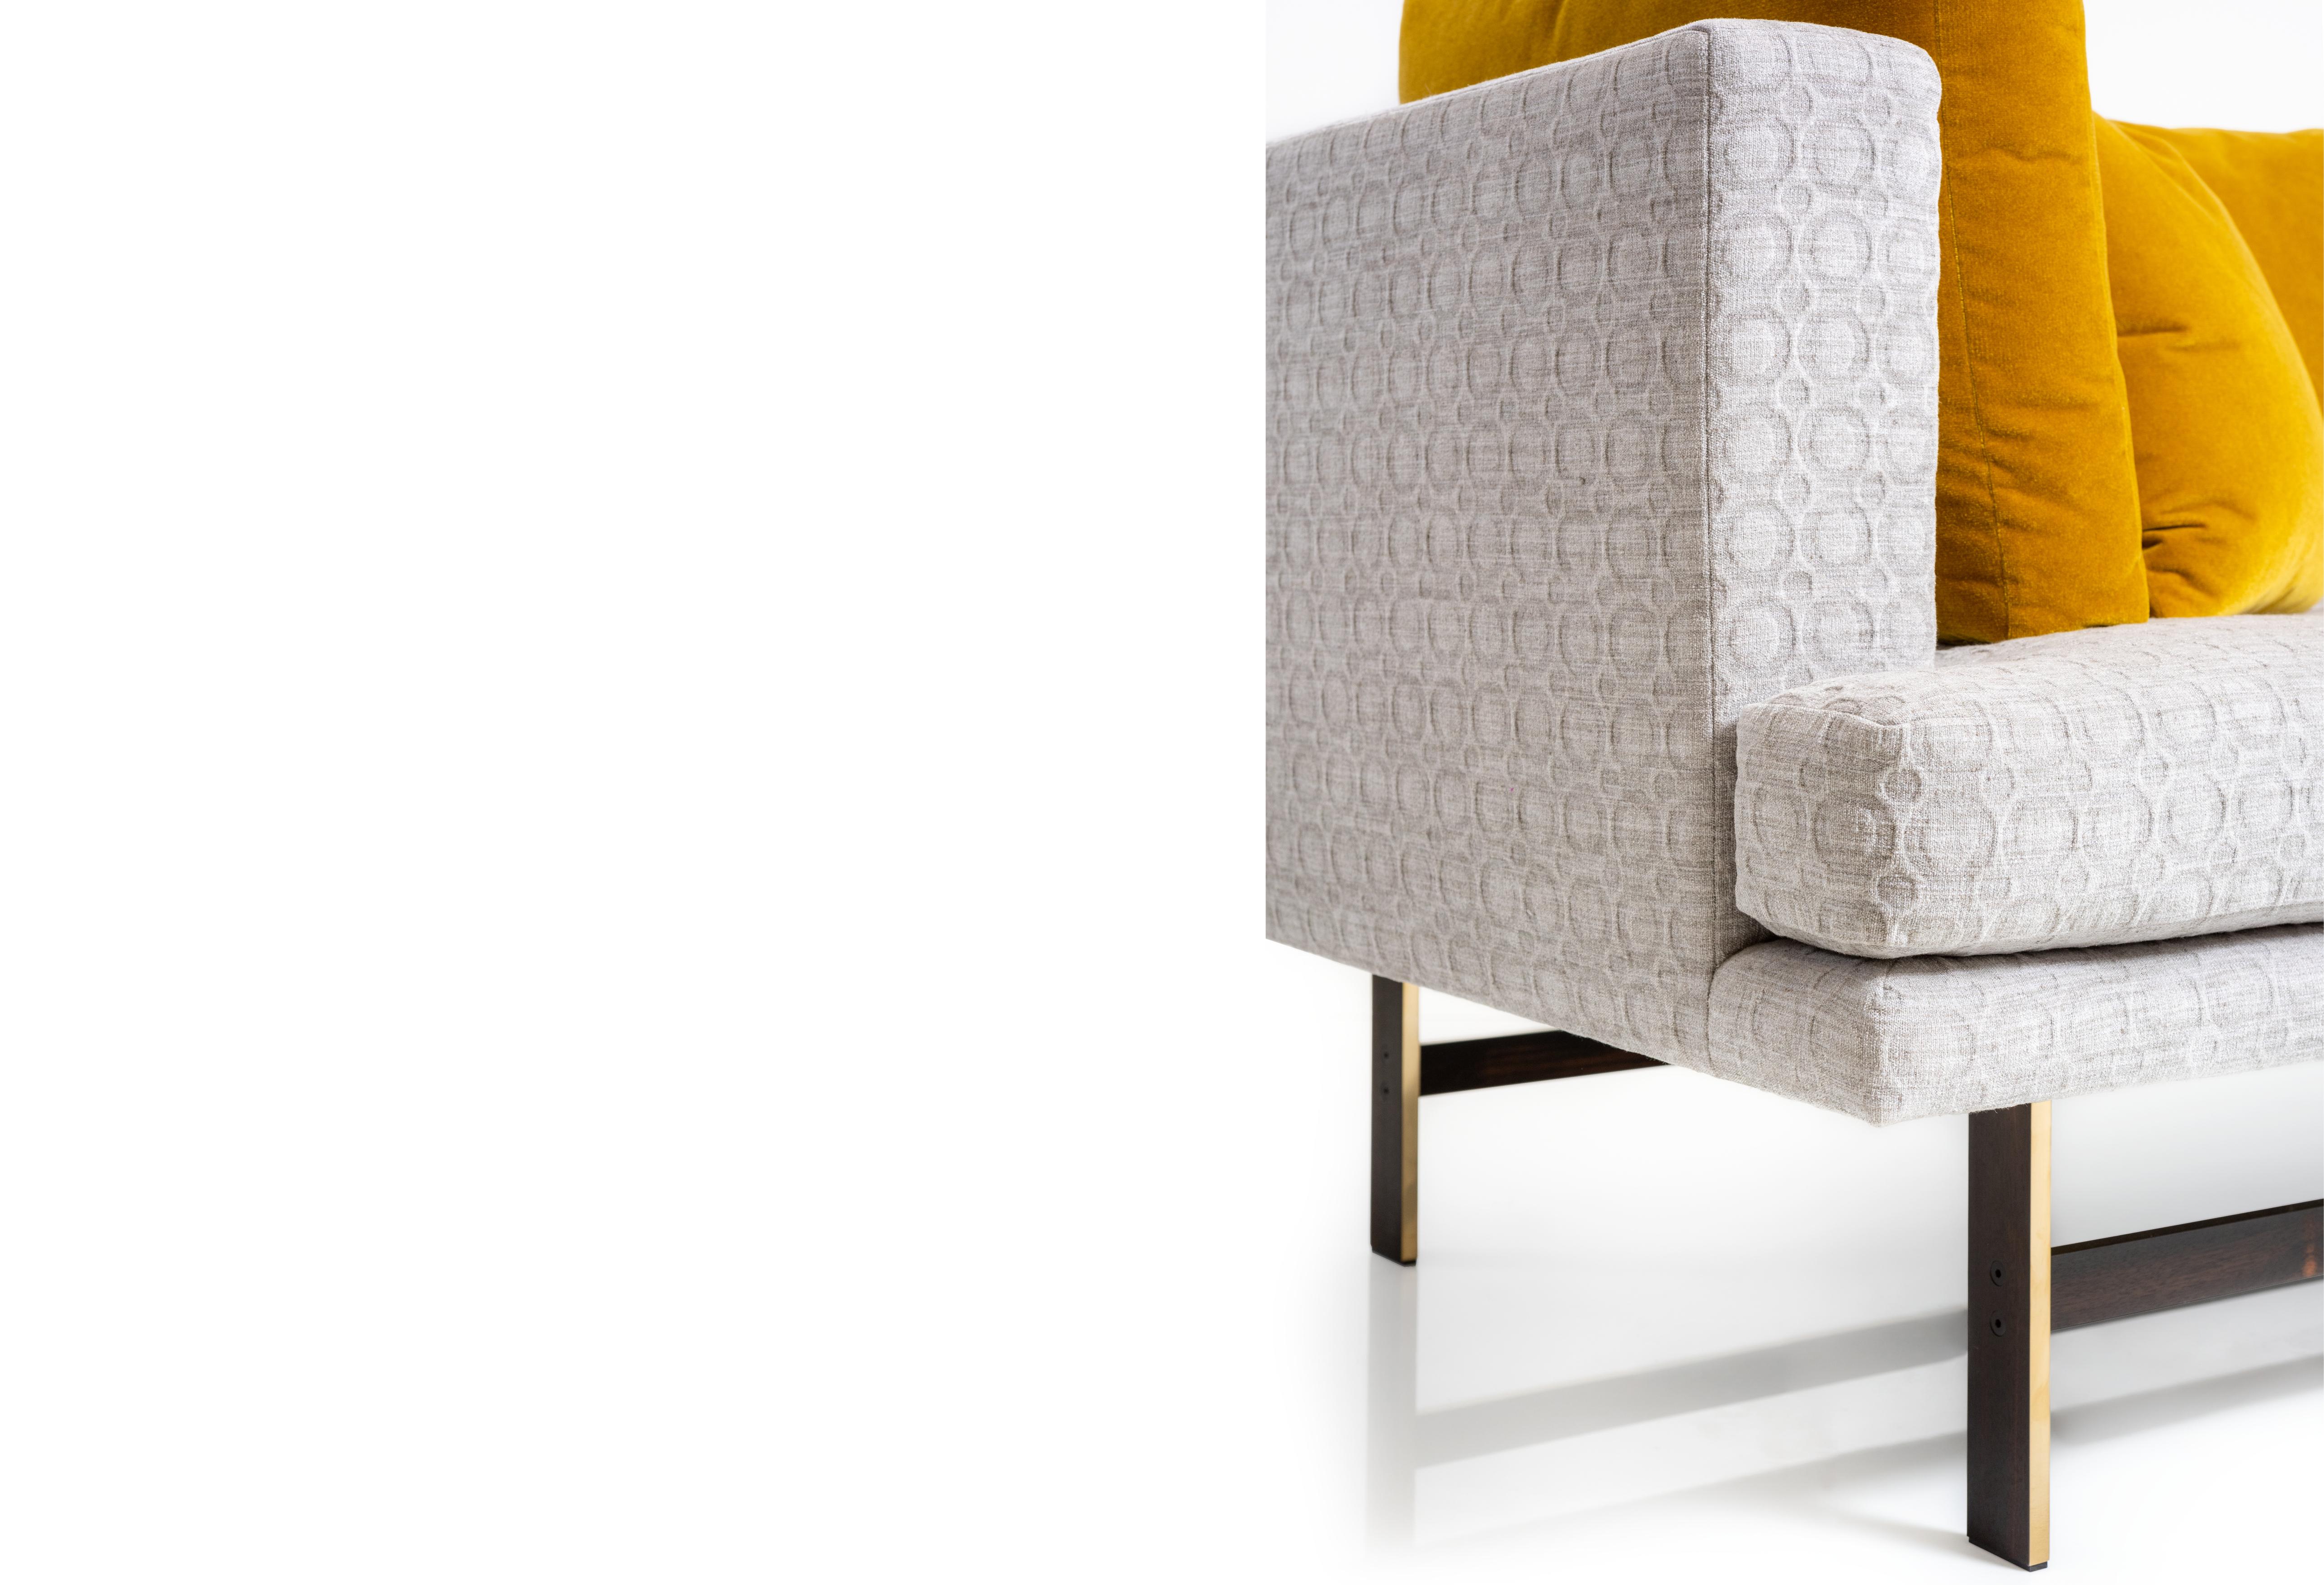 La chaise Aragon présente une asymétrie puissante qui oriente le regard où qu'elle soit placée. 

Représenté en tissu Pale Grey sur un socle en laiton massif plaqué en ébène africain. 

Les oreillers ne sont pas inclus. 

Il s'agit d'un produit